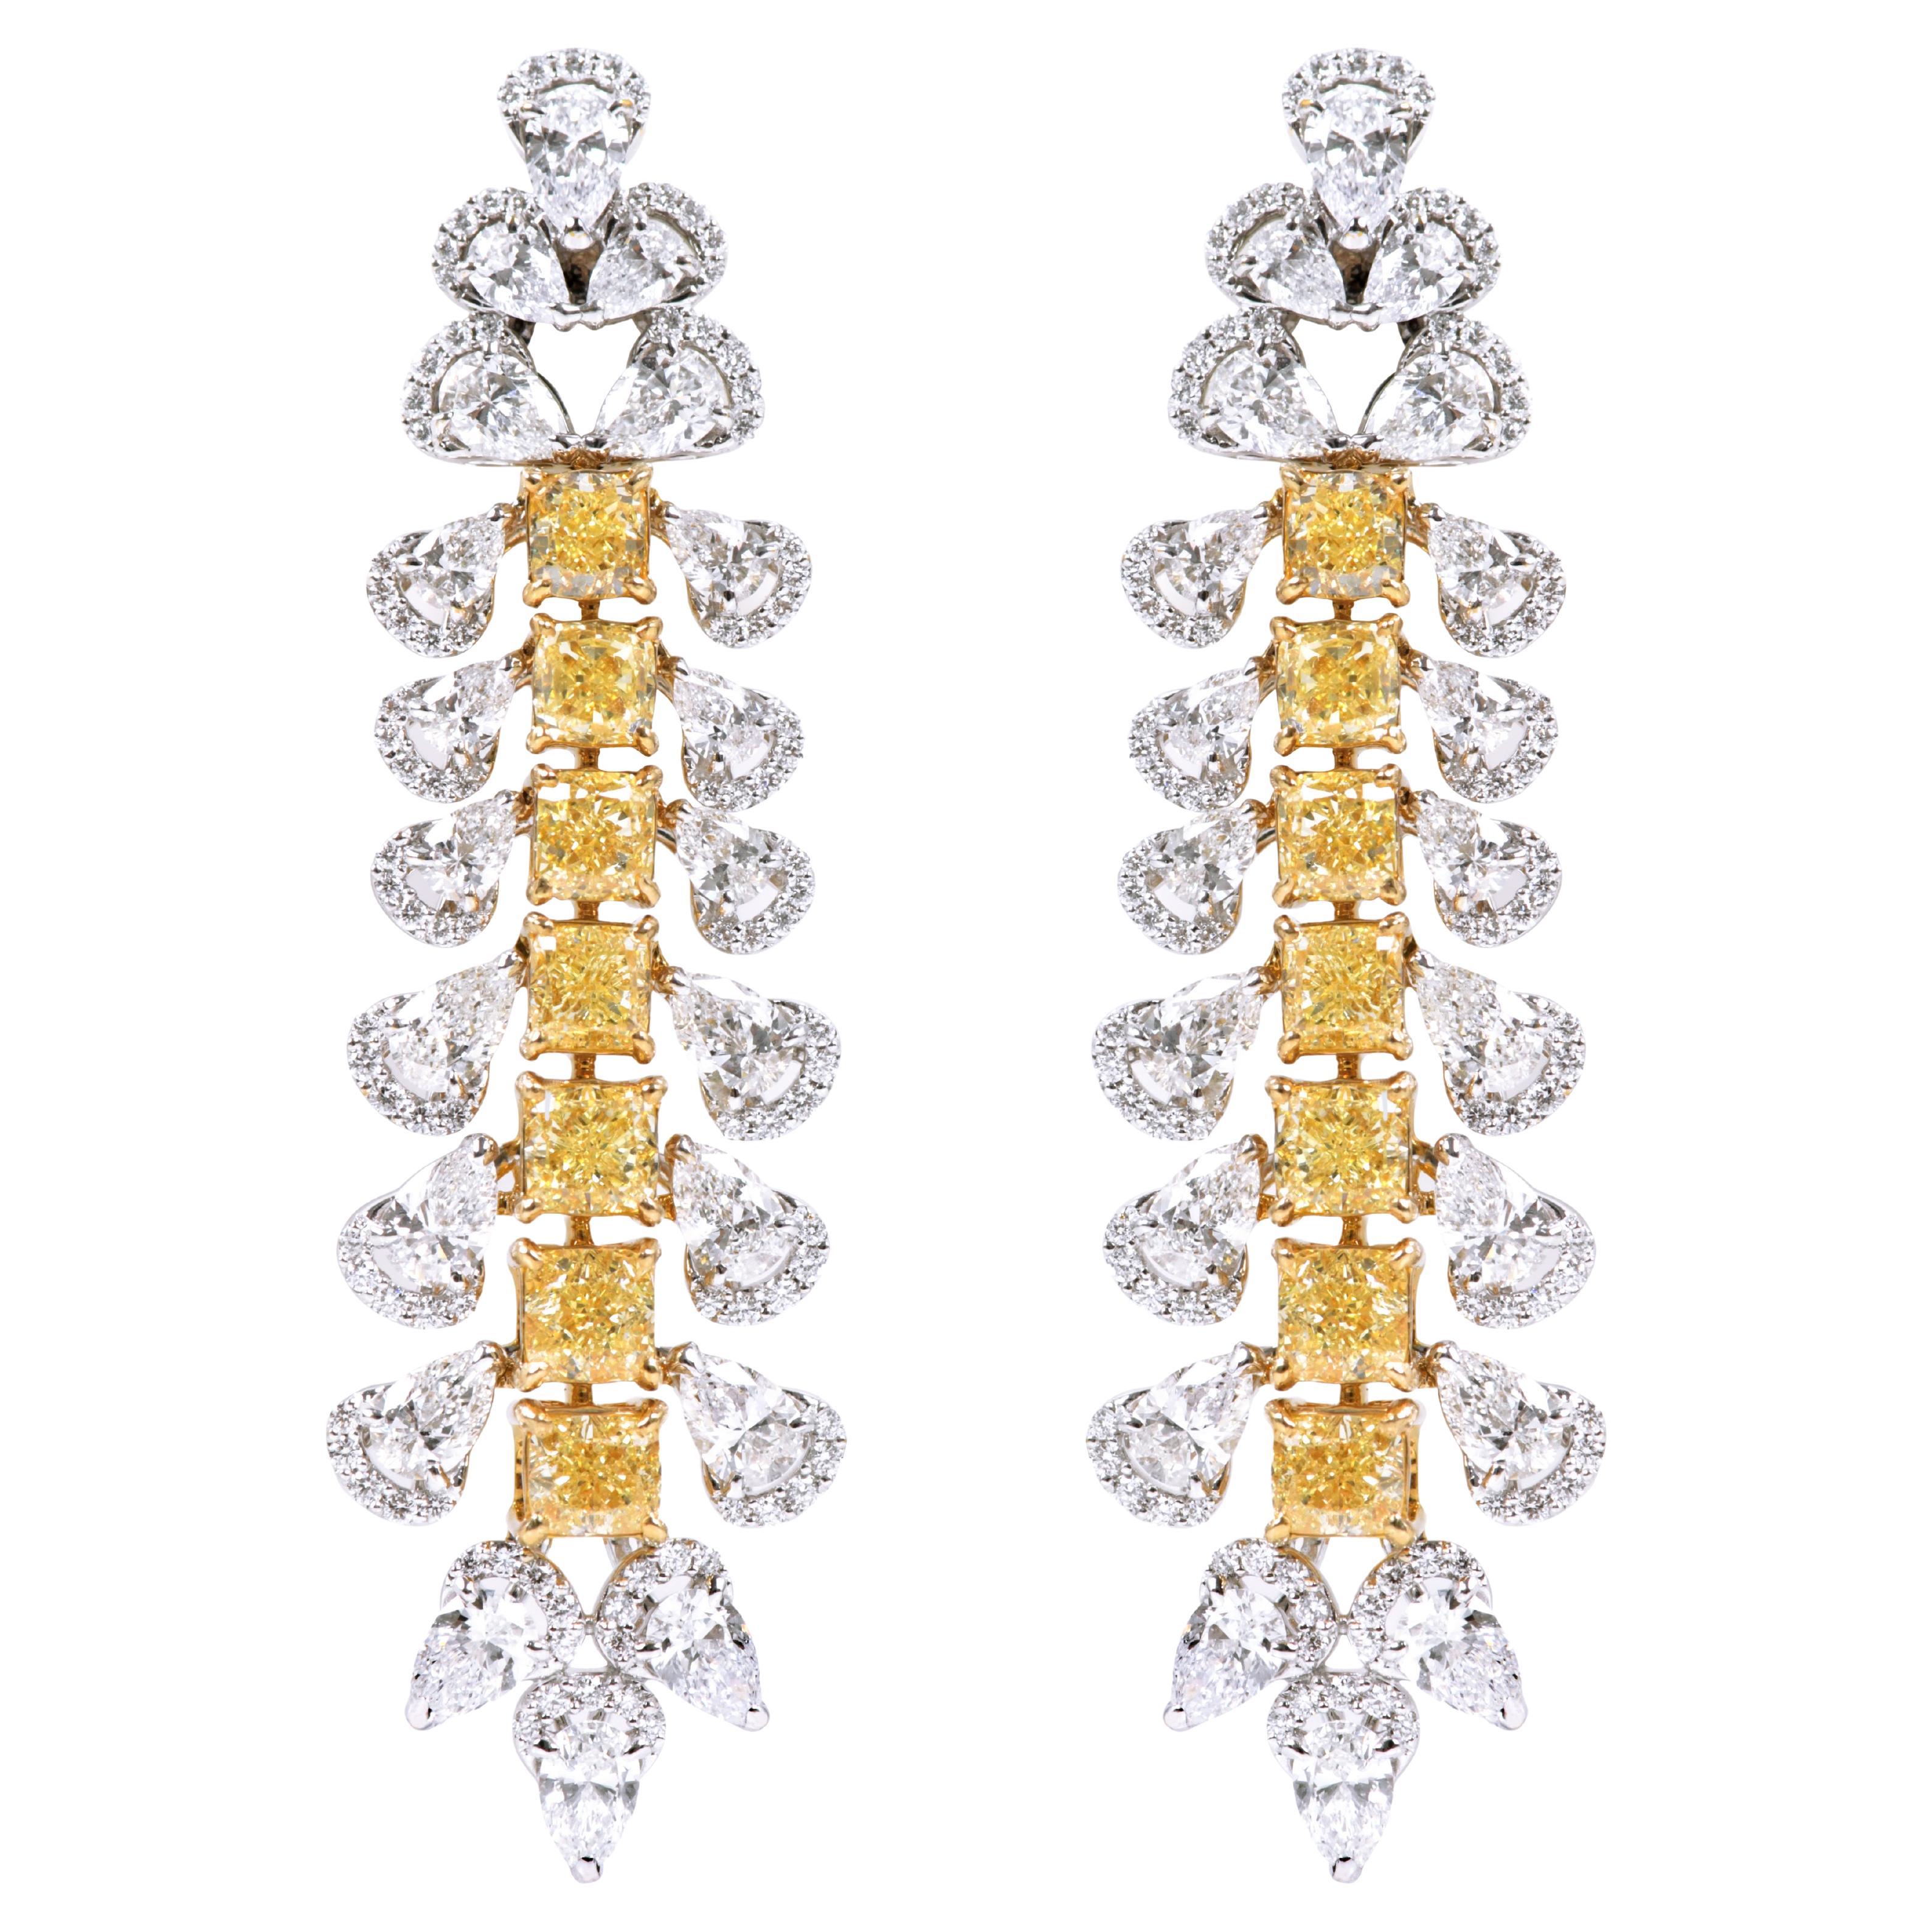 Boucles d'oreilles cocktail Solitaires en or 18 carats avec diamants jaunes et blancs de 13,31 carats